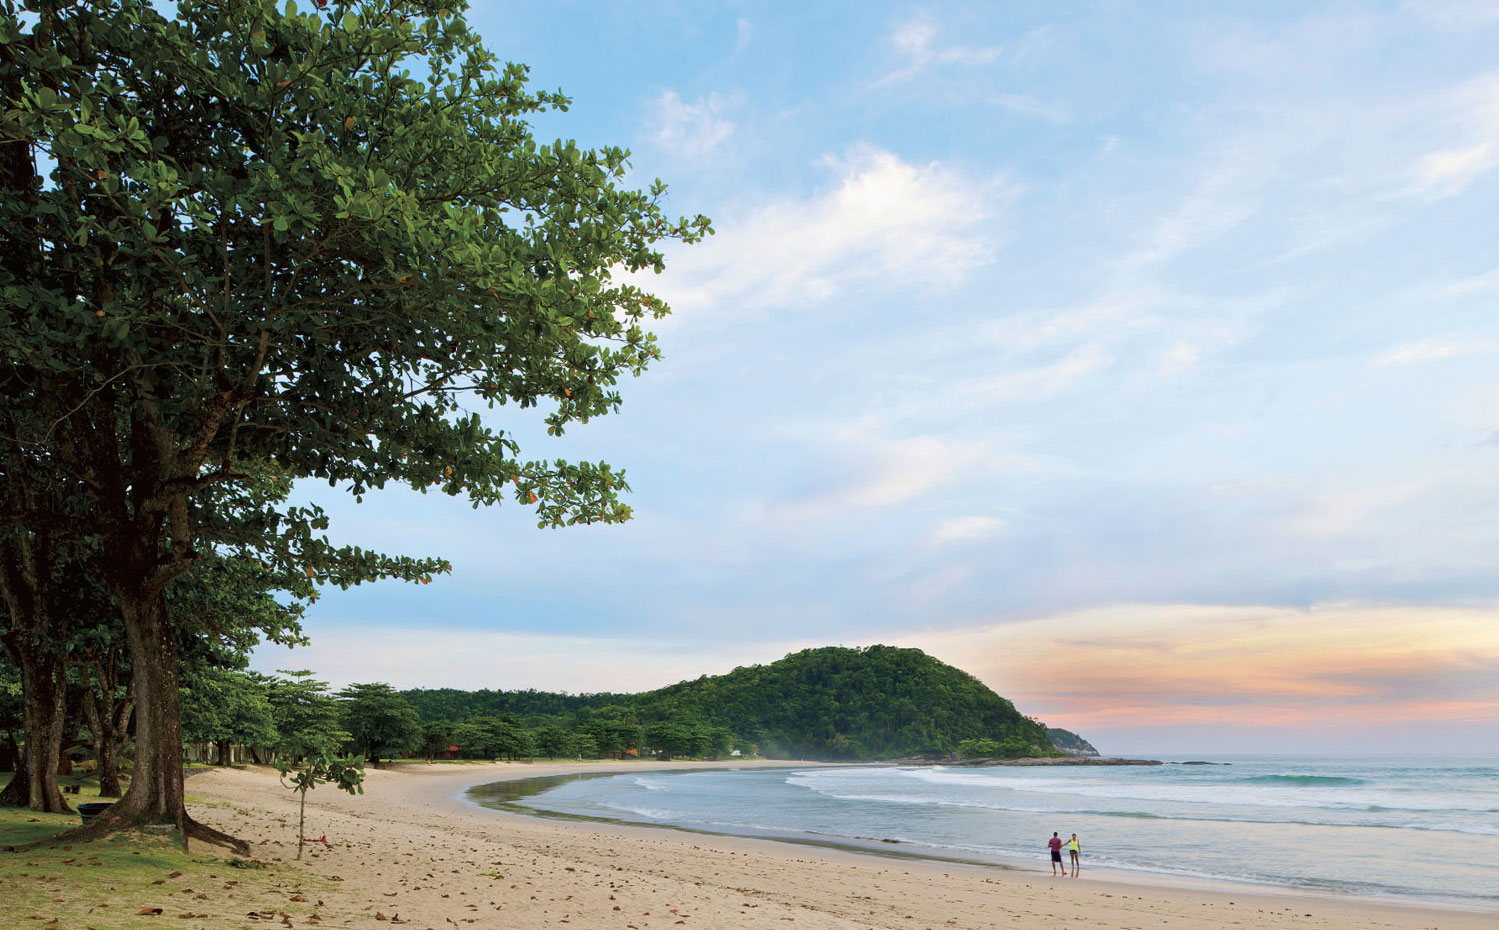 ARQUITECTURA-148-9. Tranquilas playas de arena blanca recorren esta parte de la costa brasileña